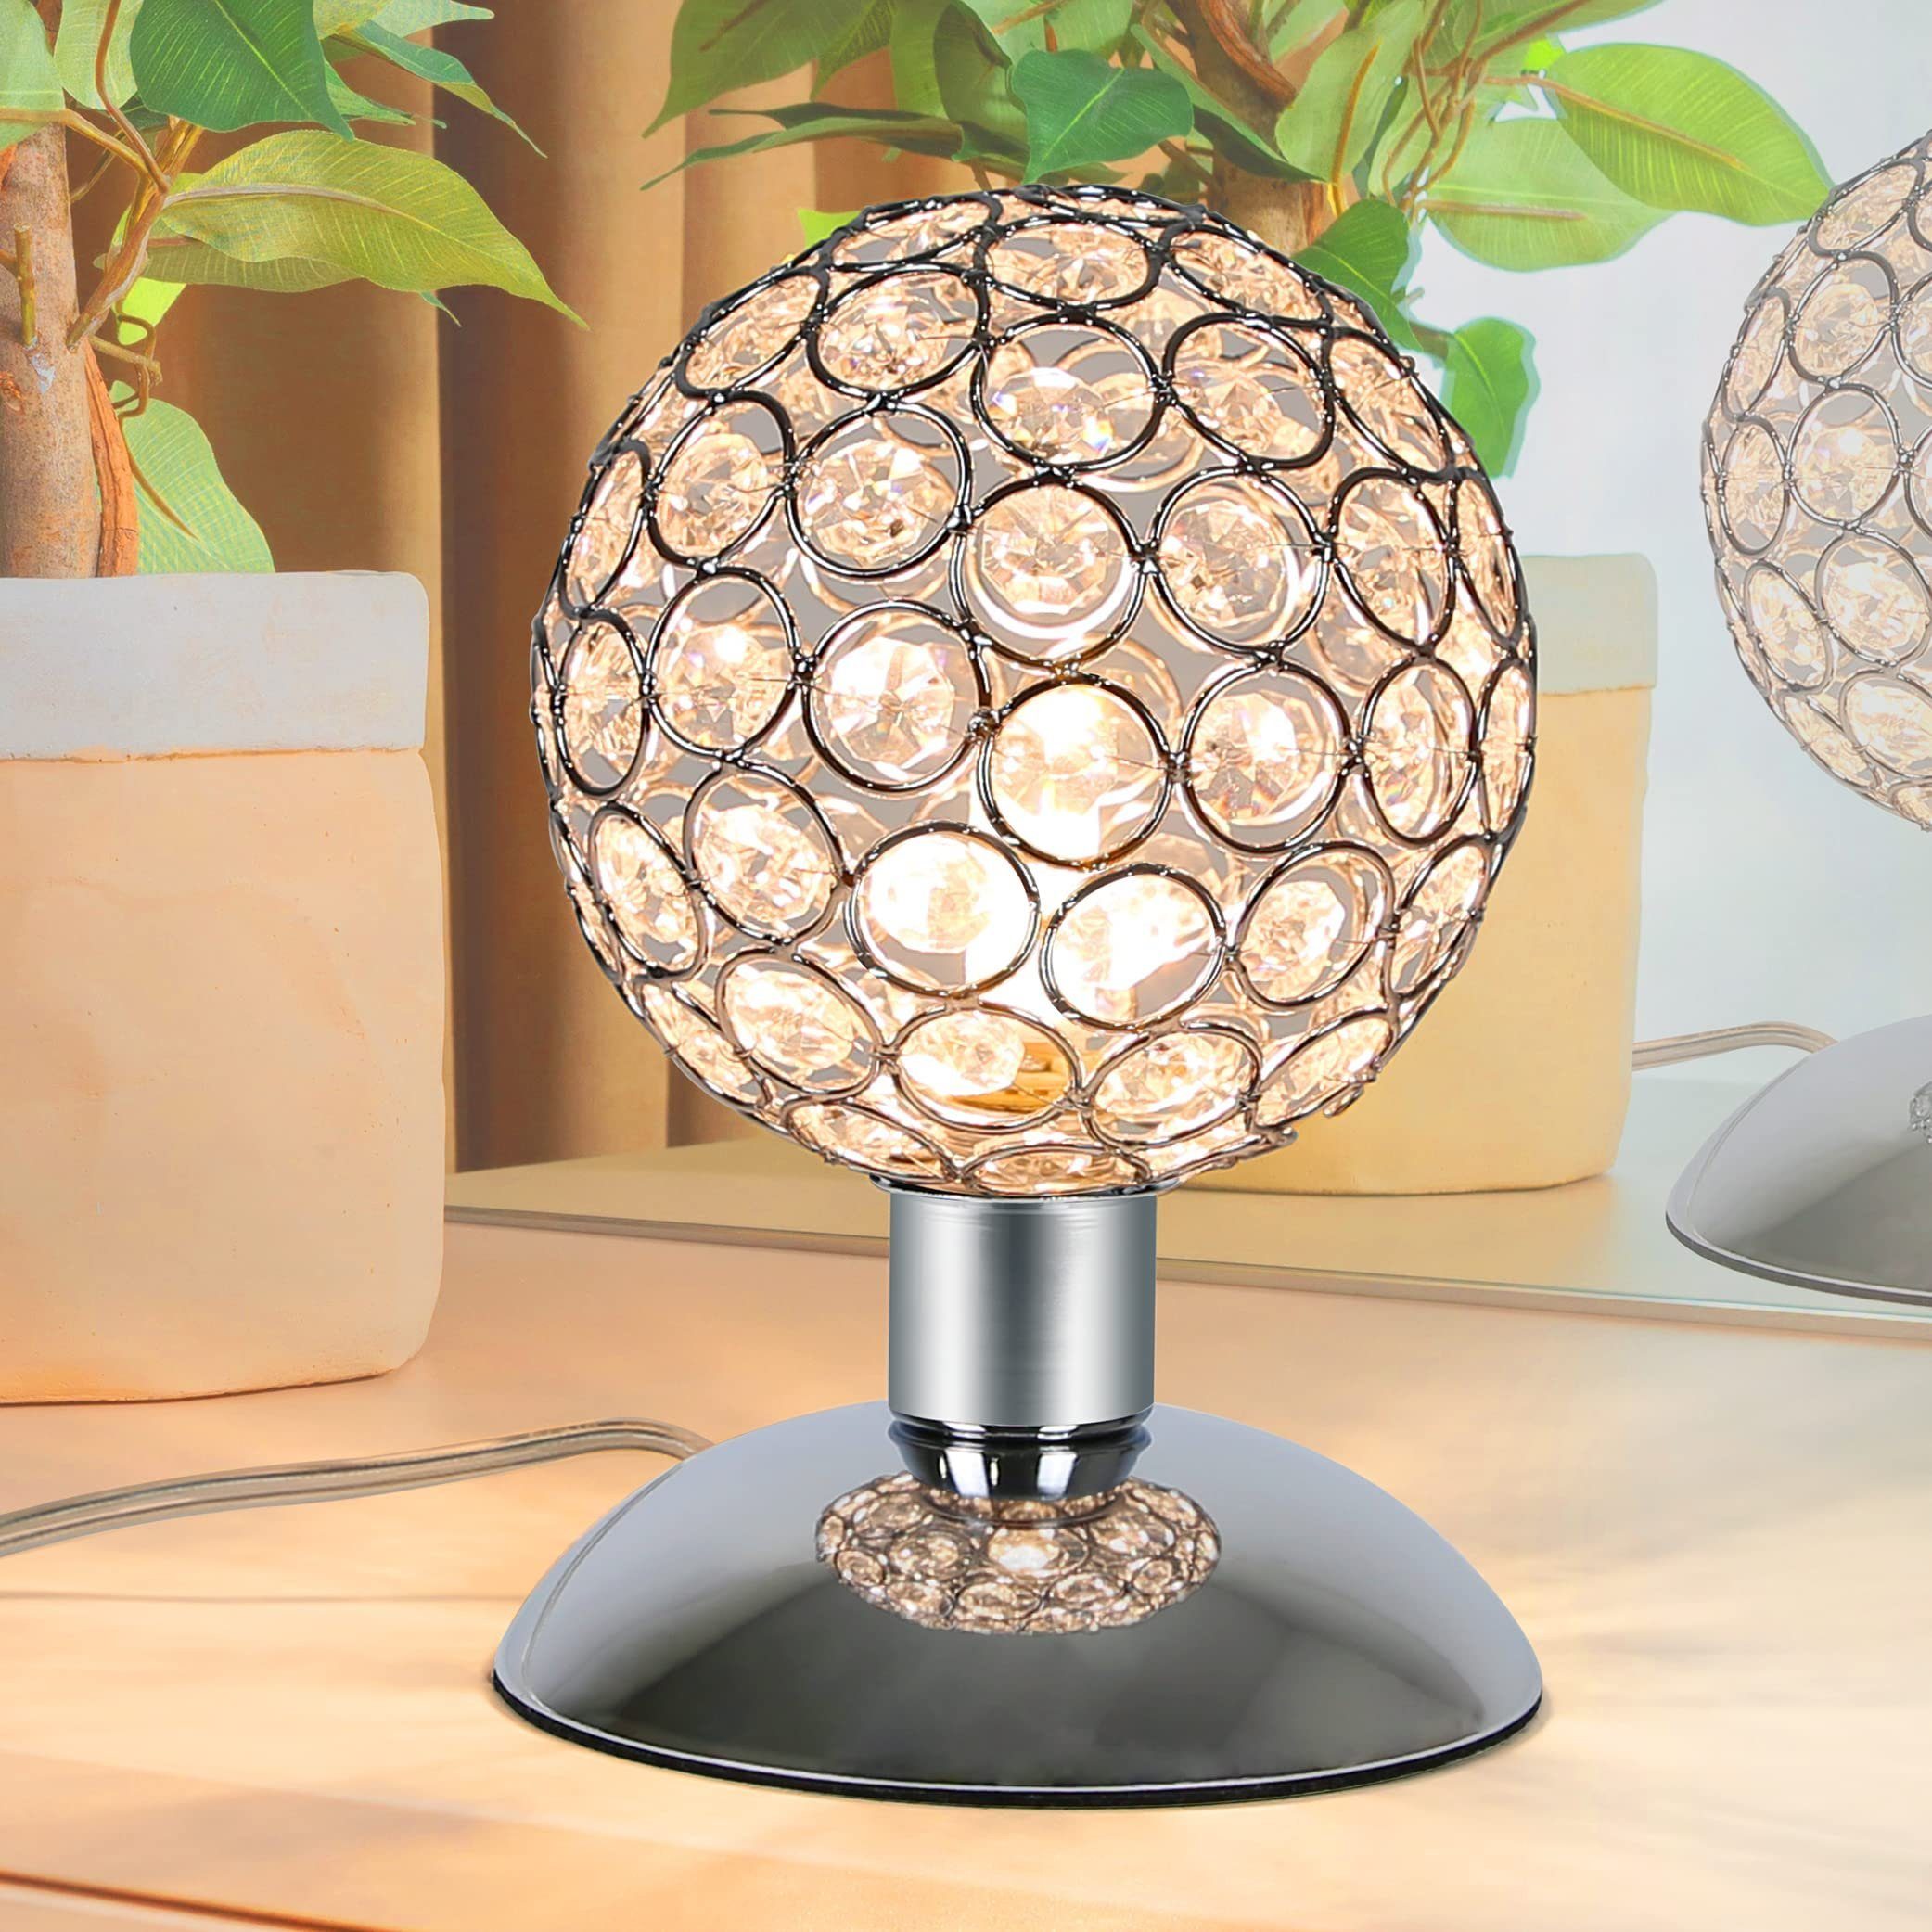 LED Deko Klein, Tischlampe LED Tischleuchte Metall Kristall Design wechselbar, Warmweiß ZMH Modern G9